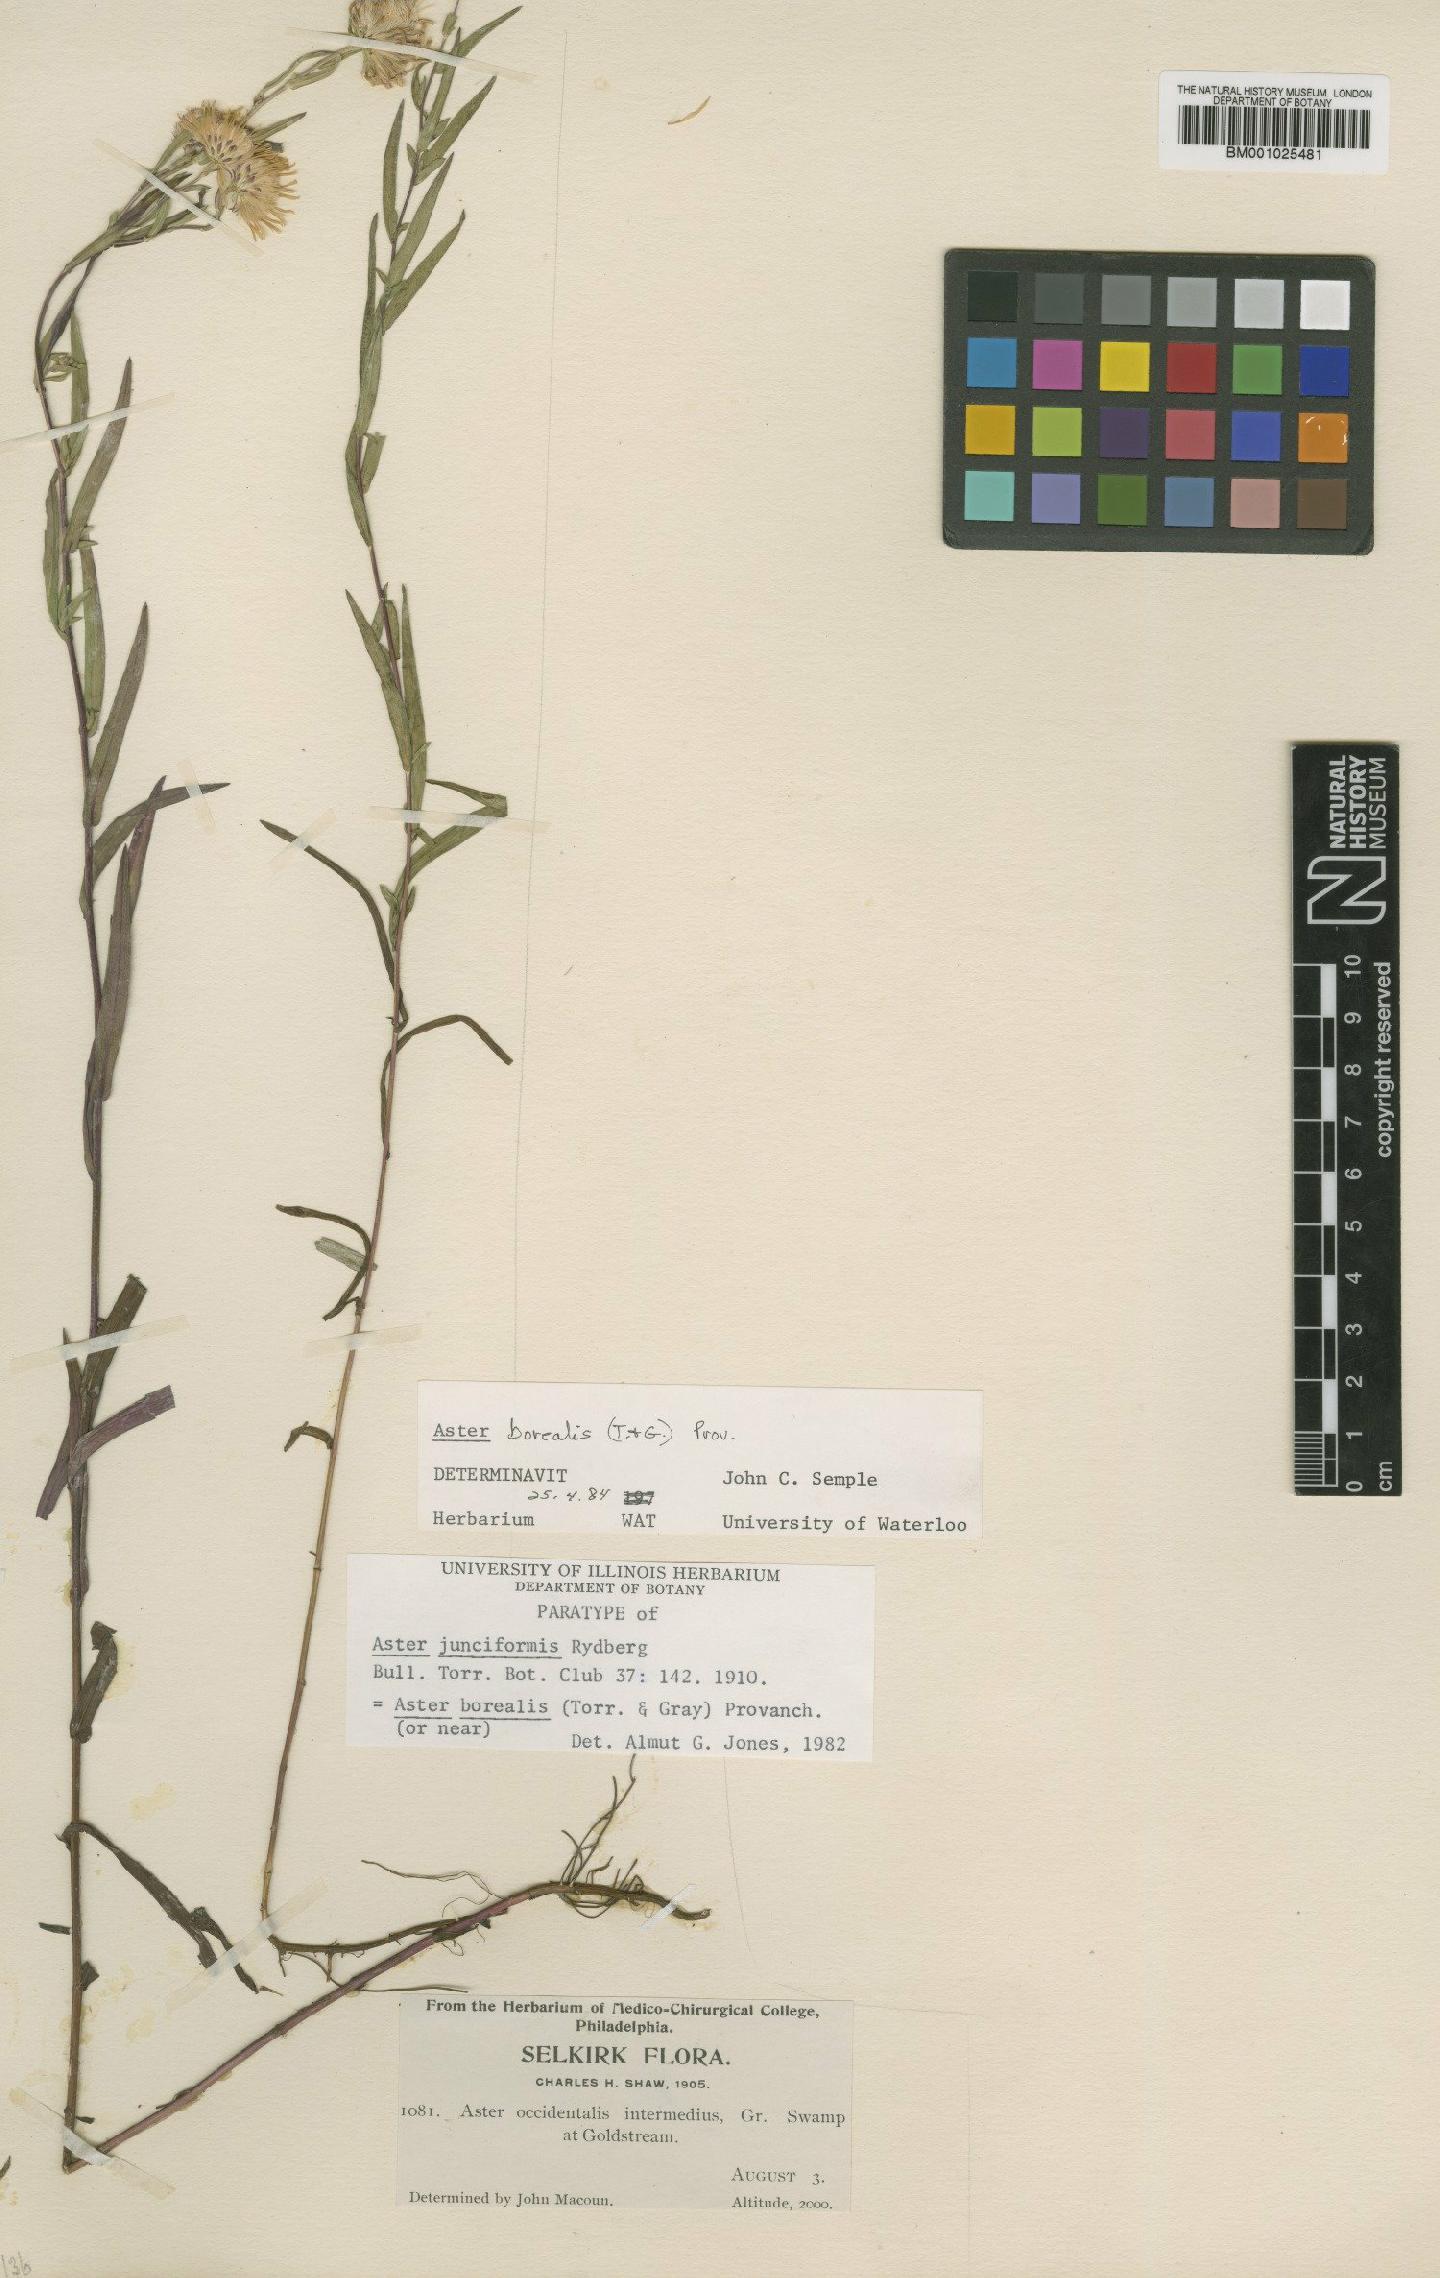 To NHMUK collection (Aster junciformis Rydb.; Paratype; NHMUK:ecatalogue:1089581)